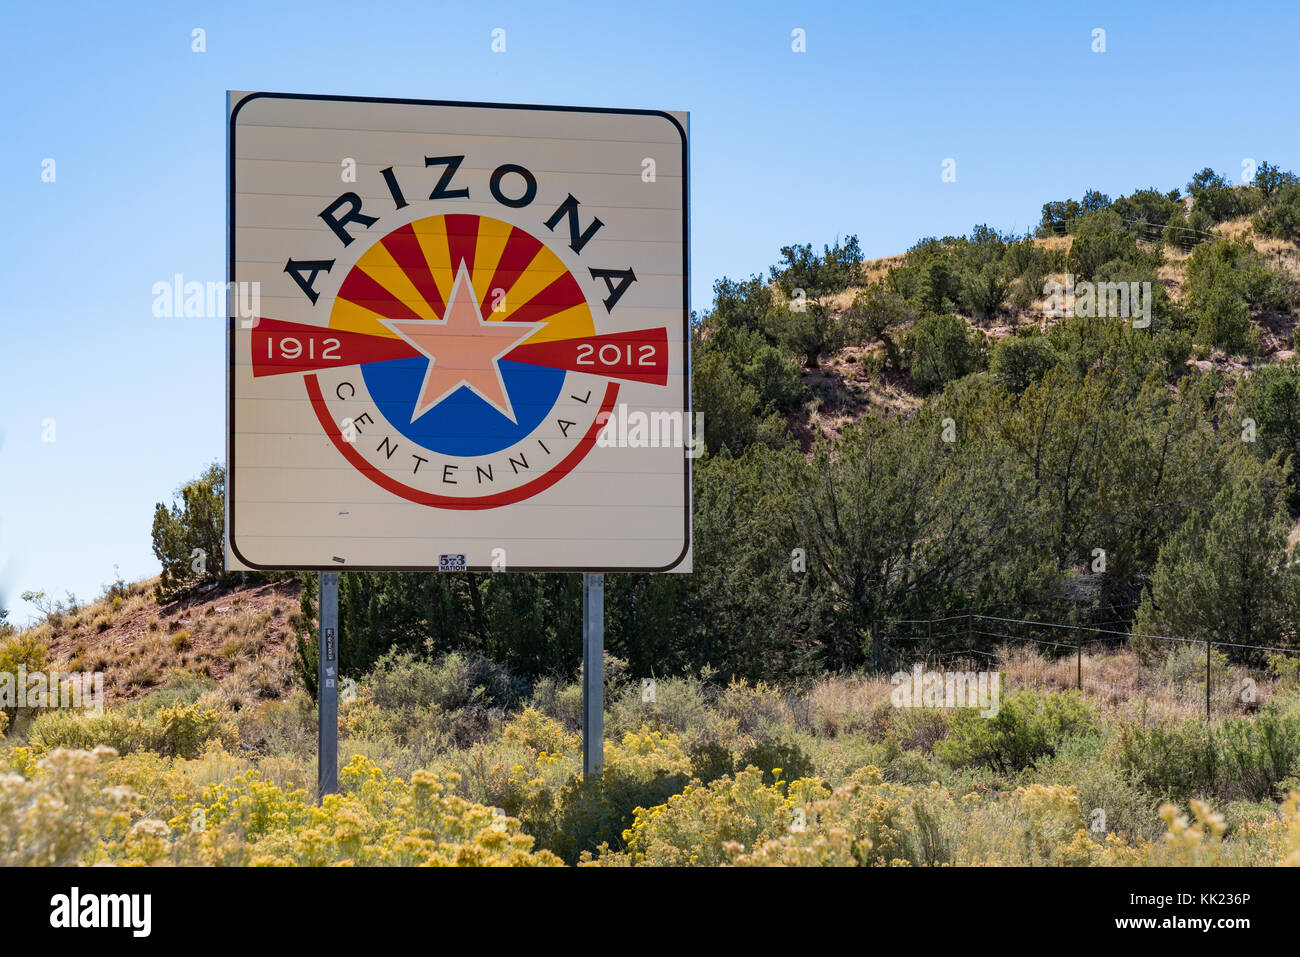 Arizona, EE.UU. - Octubre 13, 2017: cartel de bienvenida de Arizona en la frontera del estado junto a la autopista Foto de stock